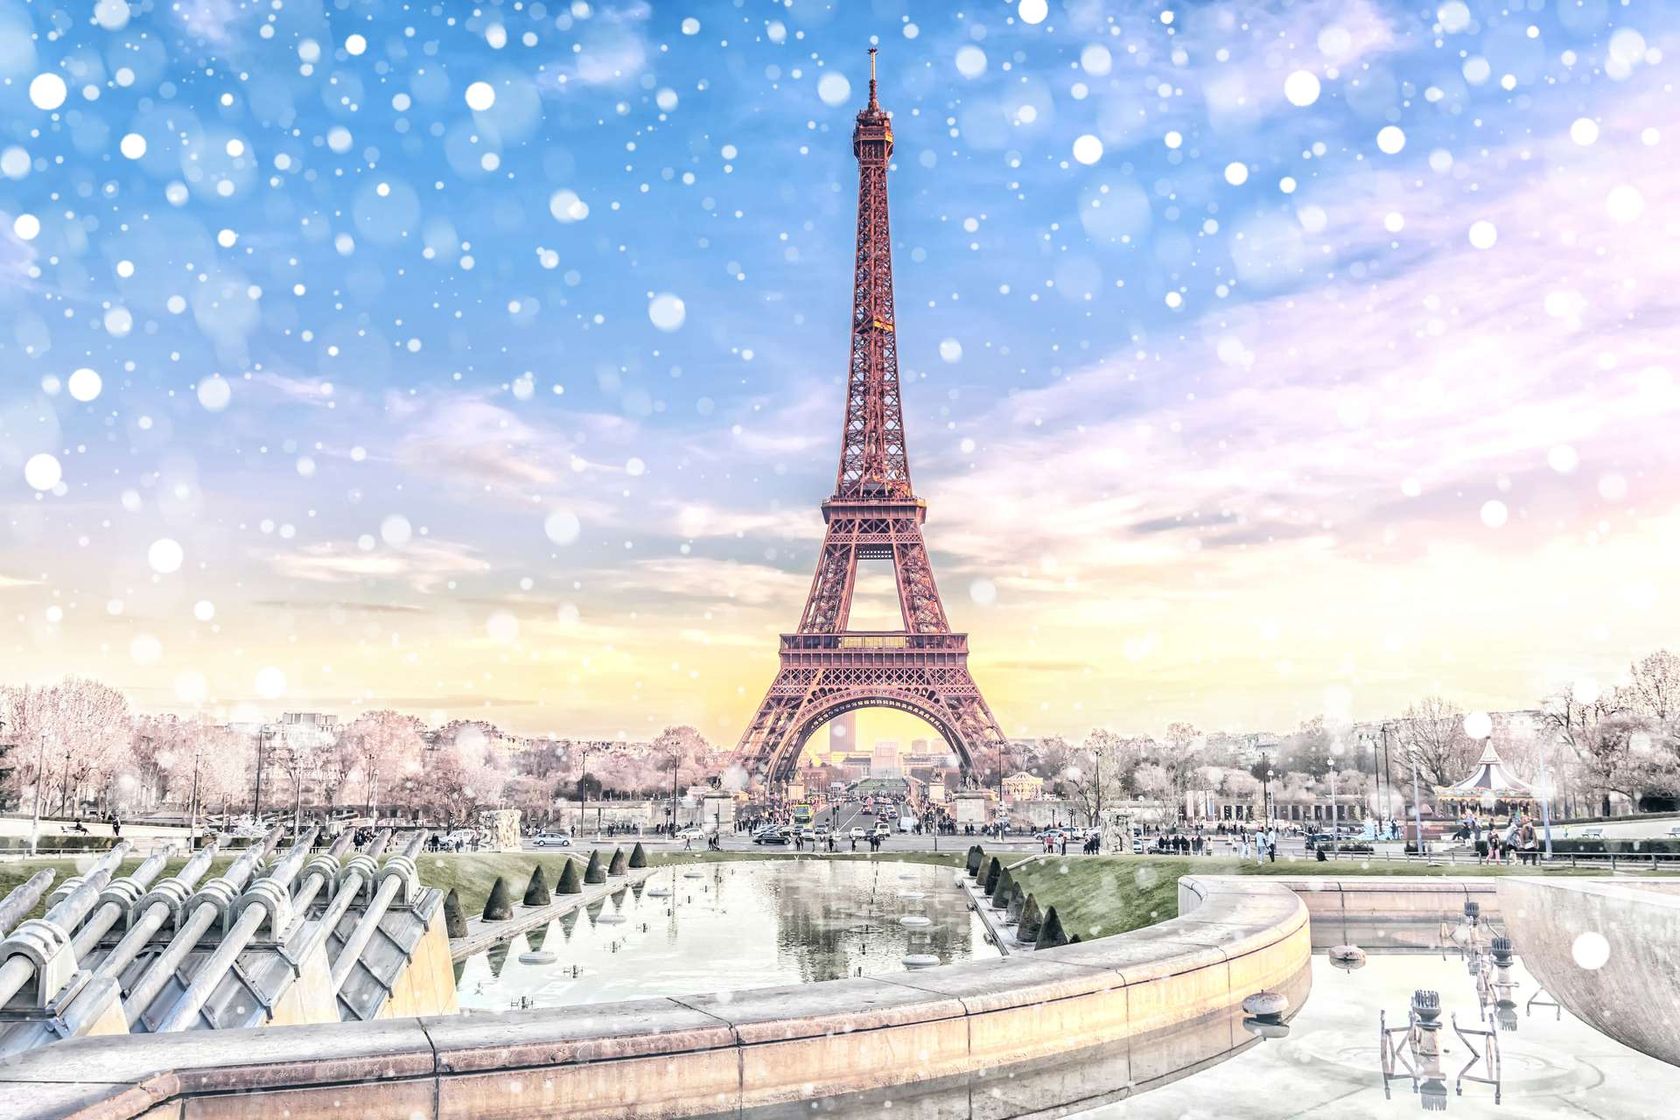 Frankrijk Parijs in de winter met sneeuw